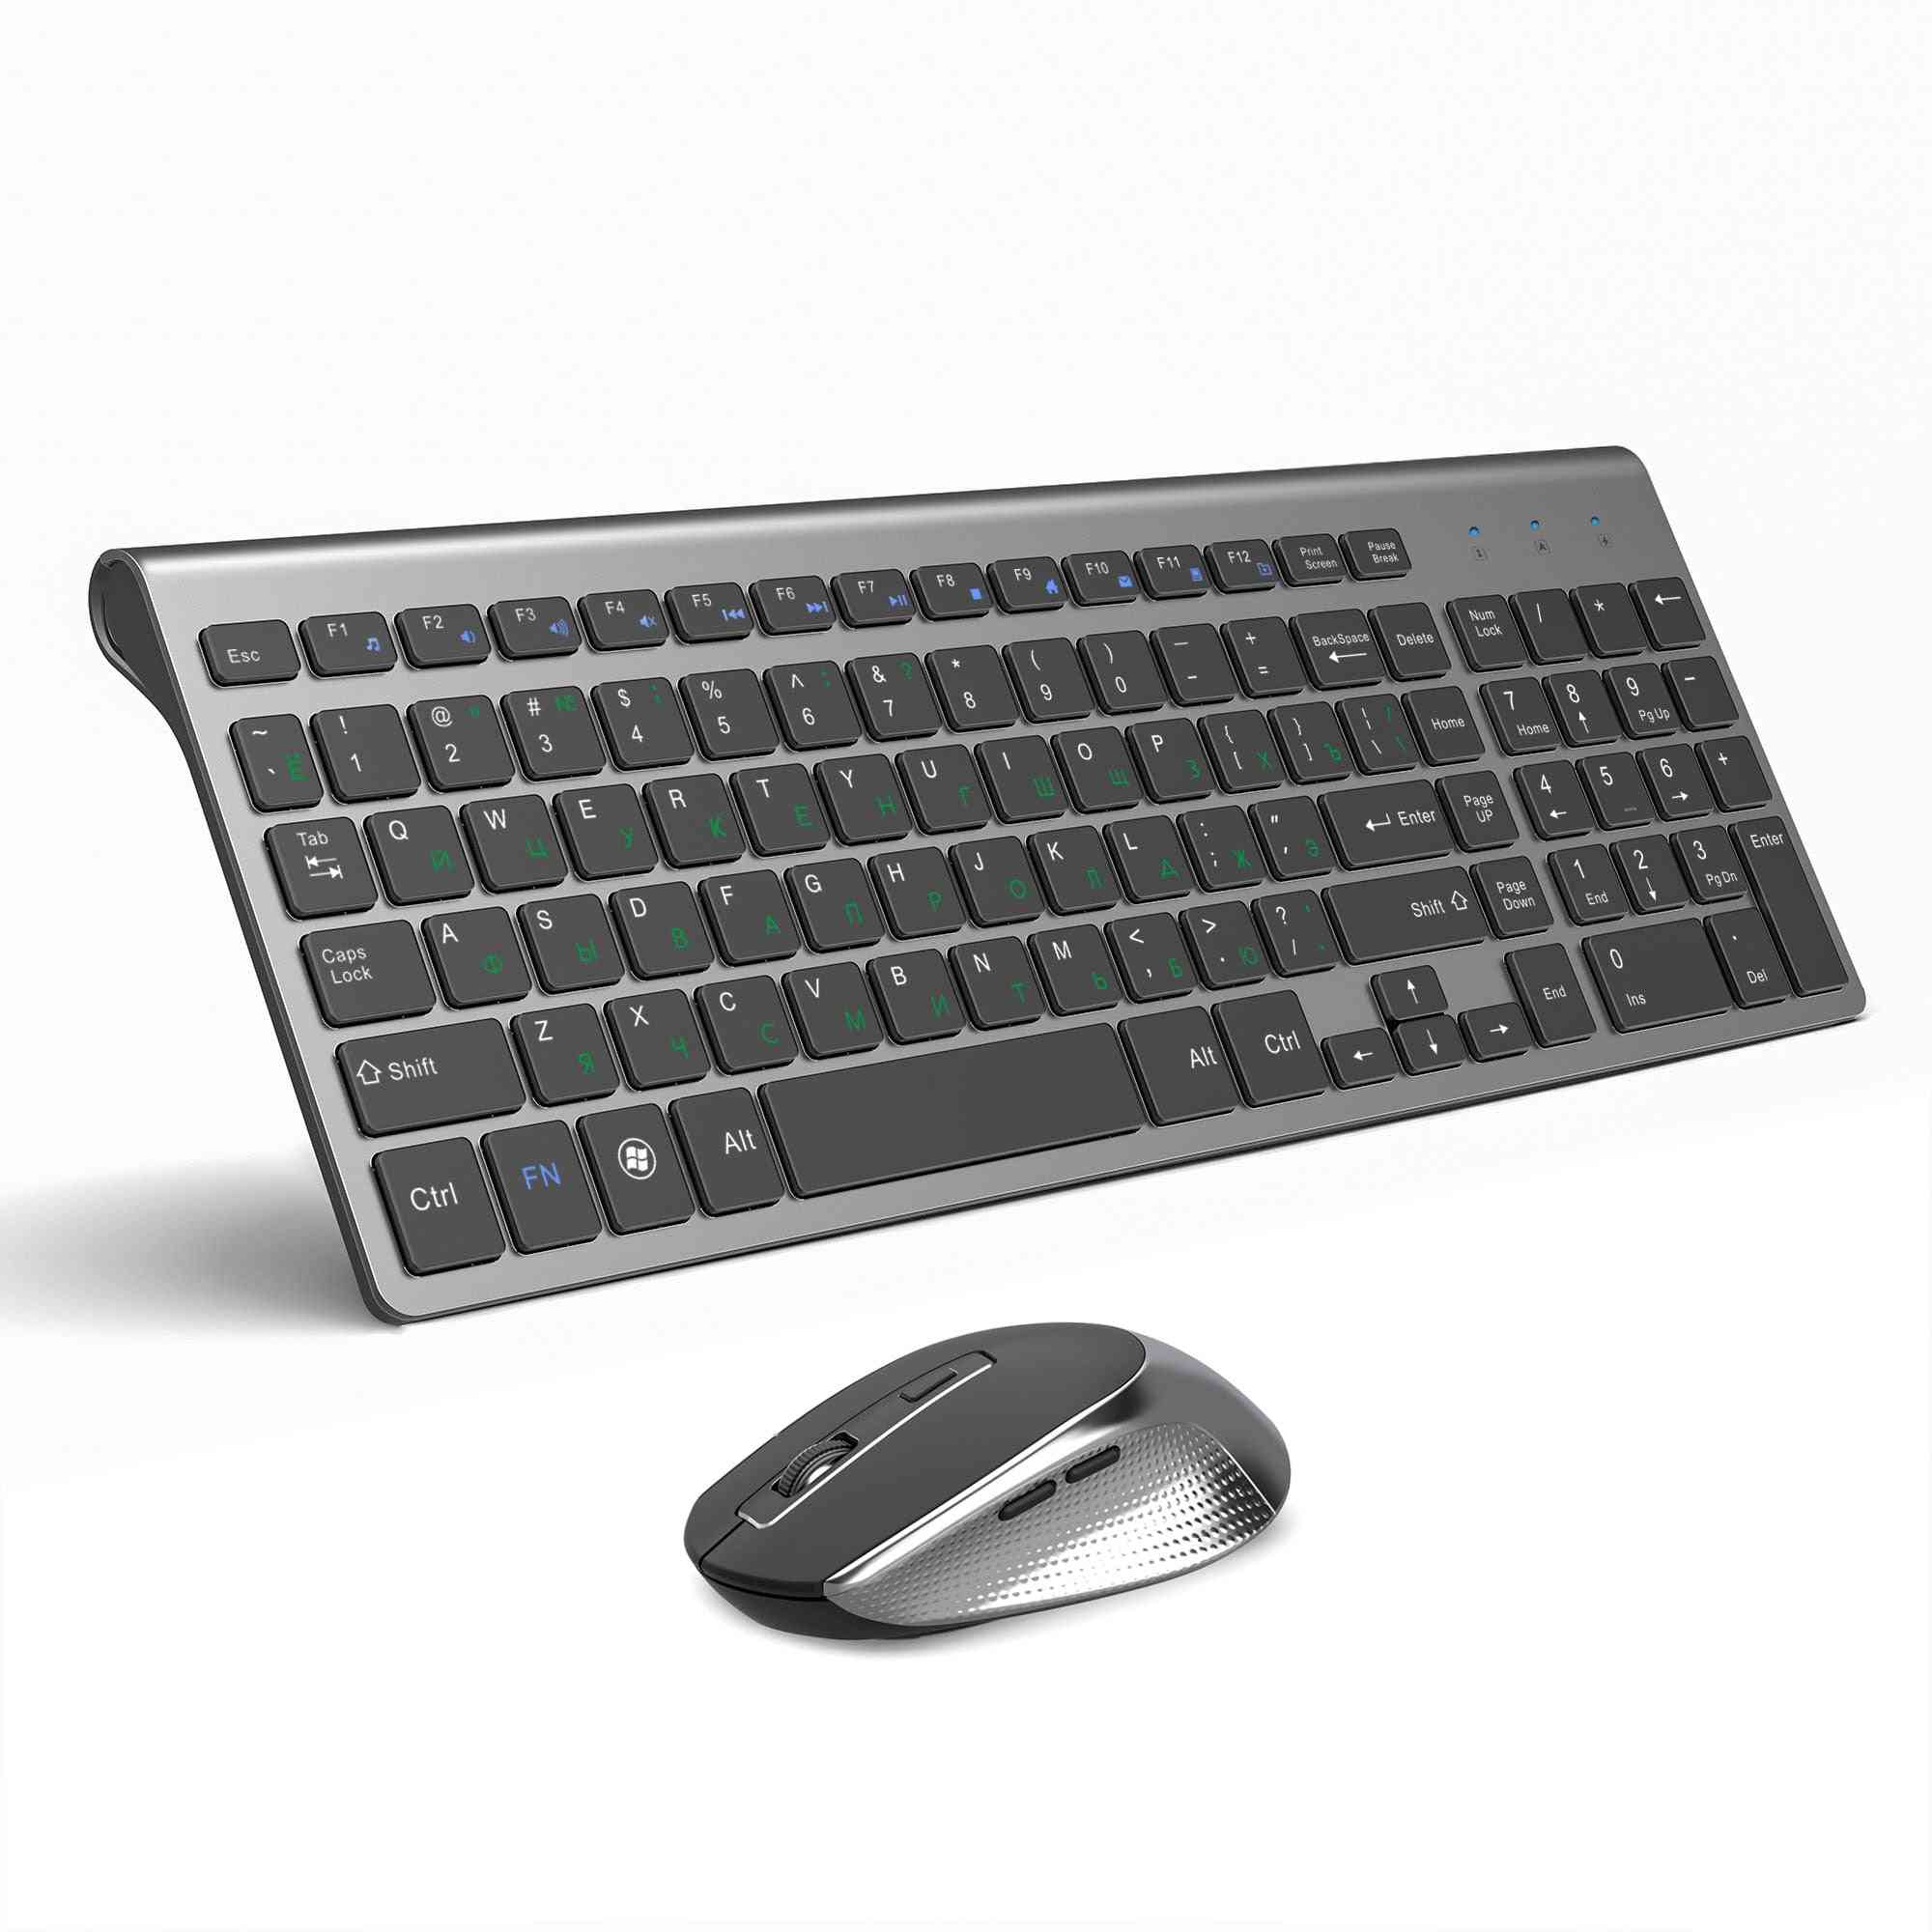 Kabelloses Tastatur- und Mausset - ergonomische Maus, leiser Knopf (eisengrau)